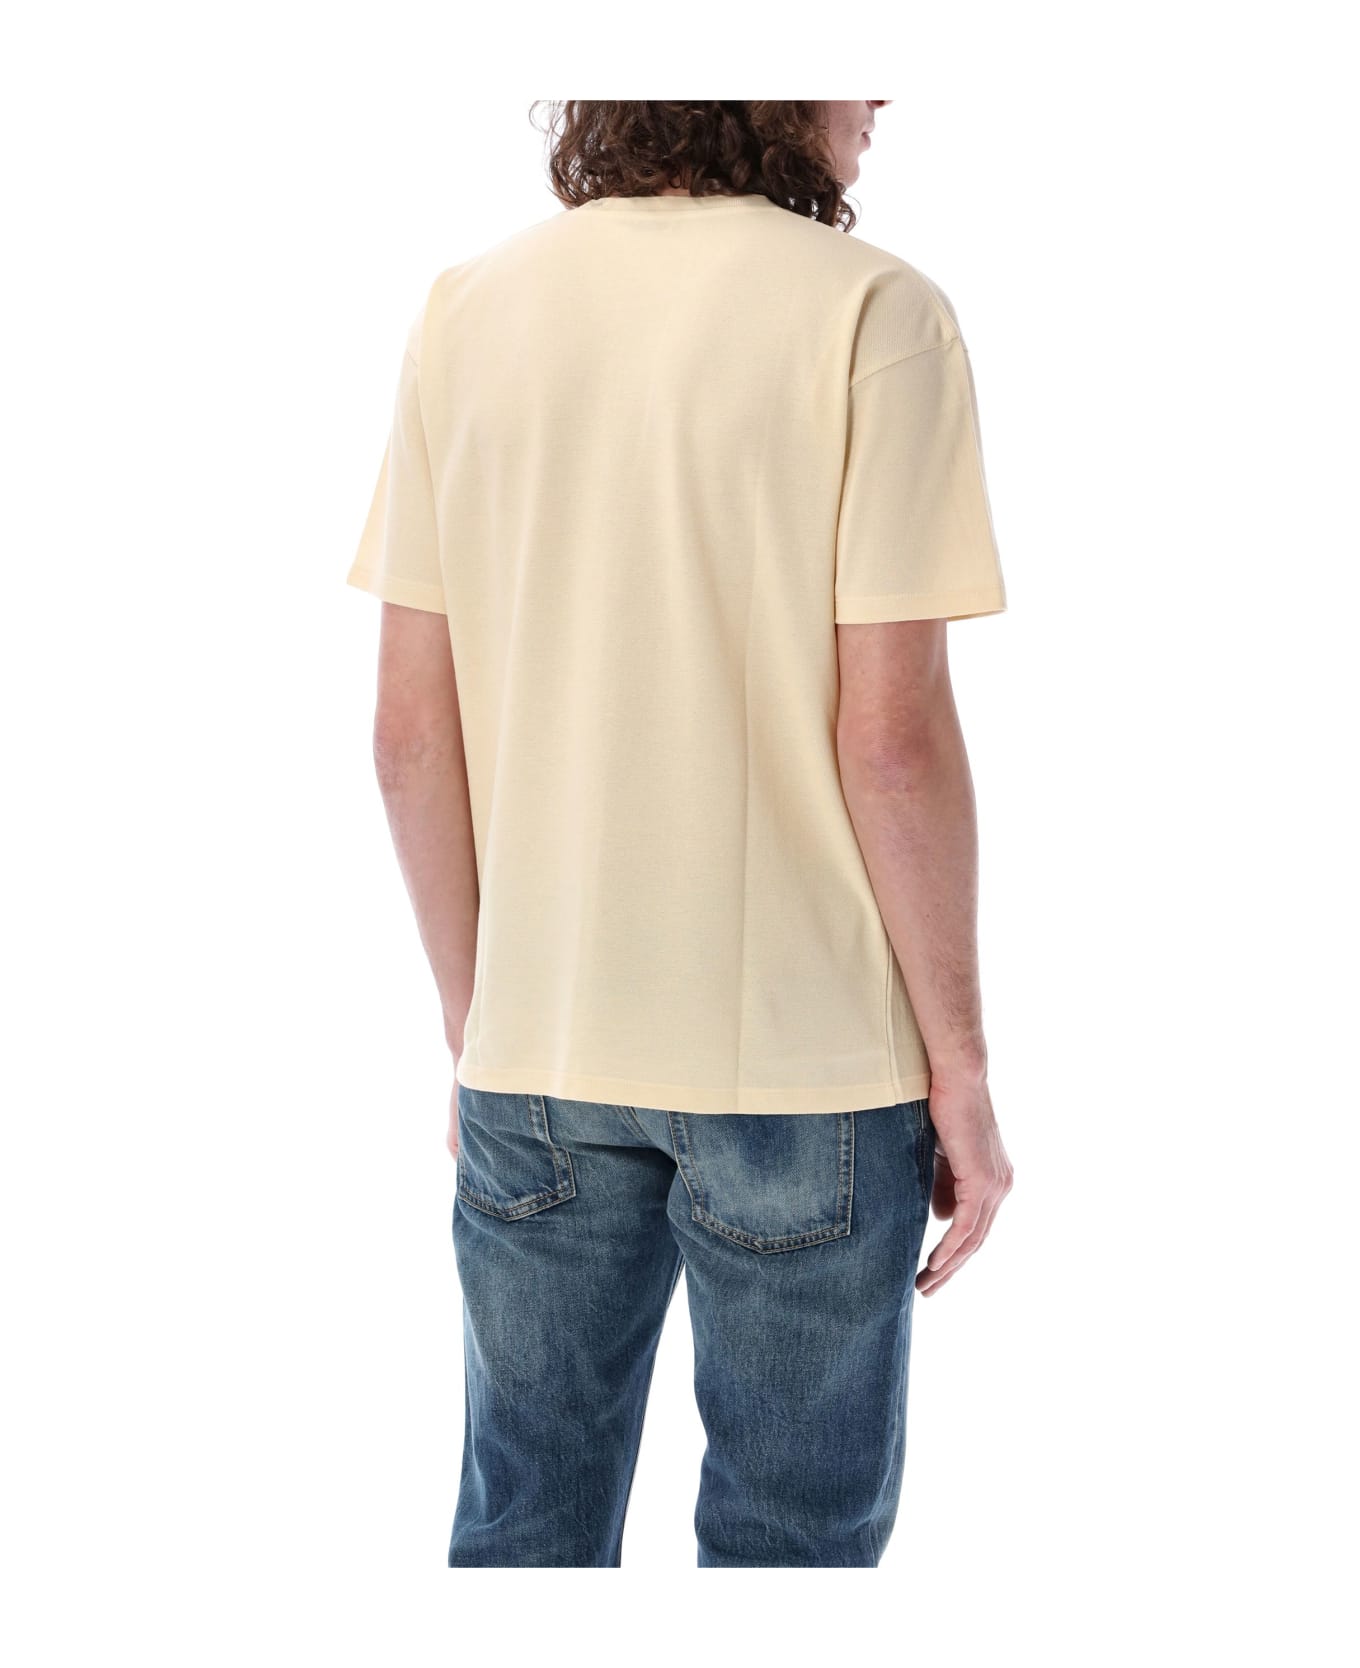 Saint Laurent Piquet T-shirt - YELLOW